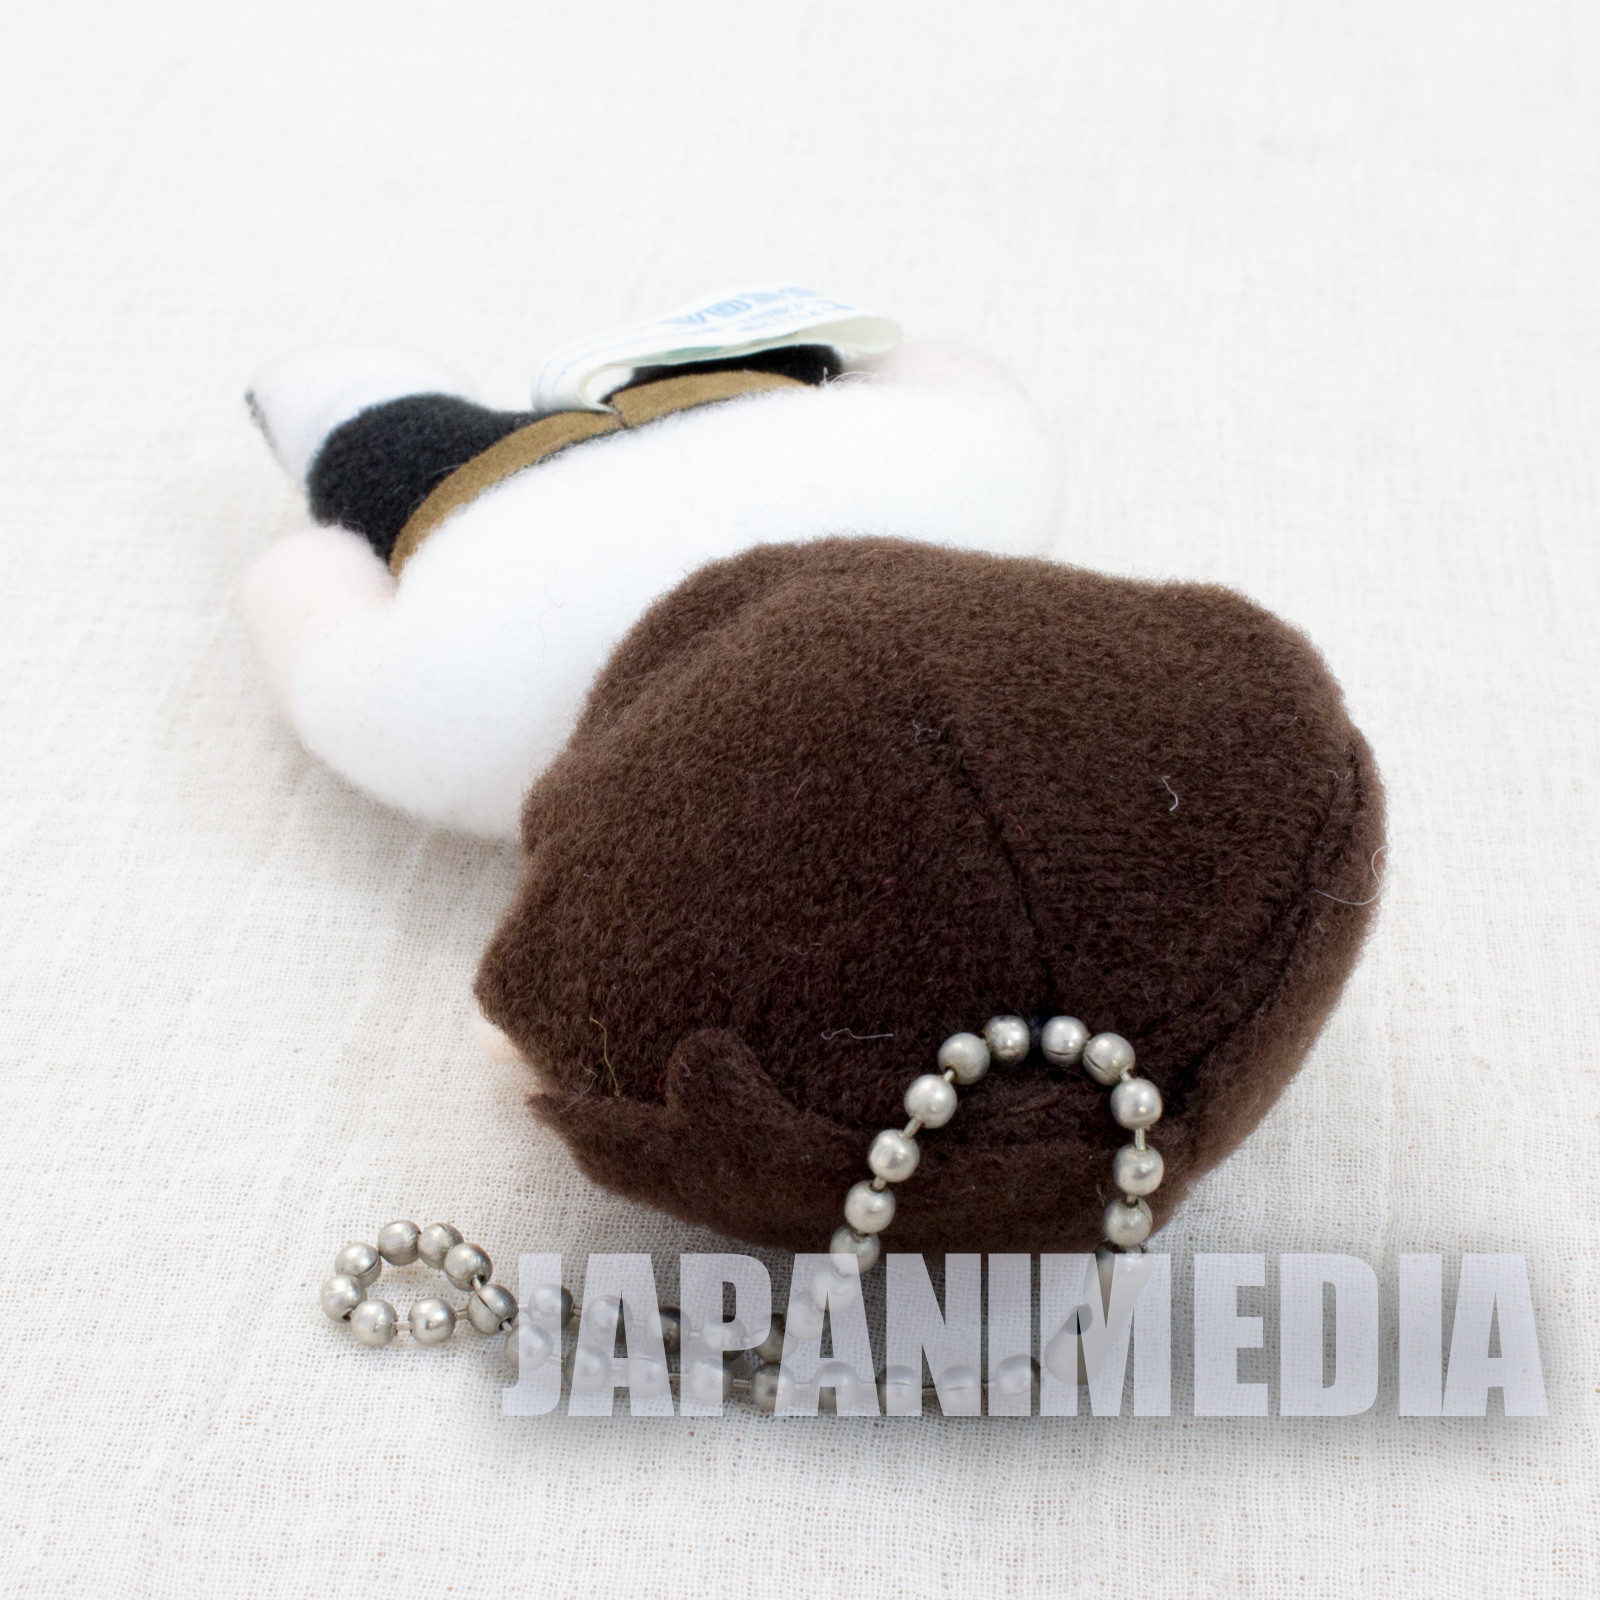 Evangelion Shinji Ikari Mini Plush Doll 3.5" JAPAN ANIME MANGA